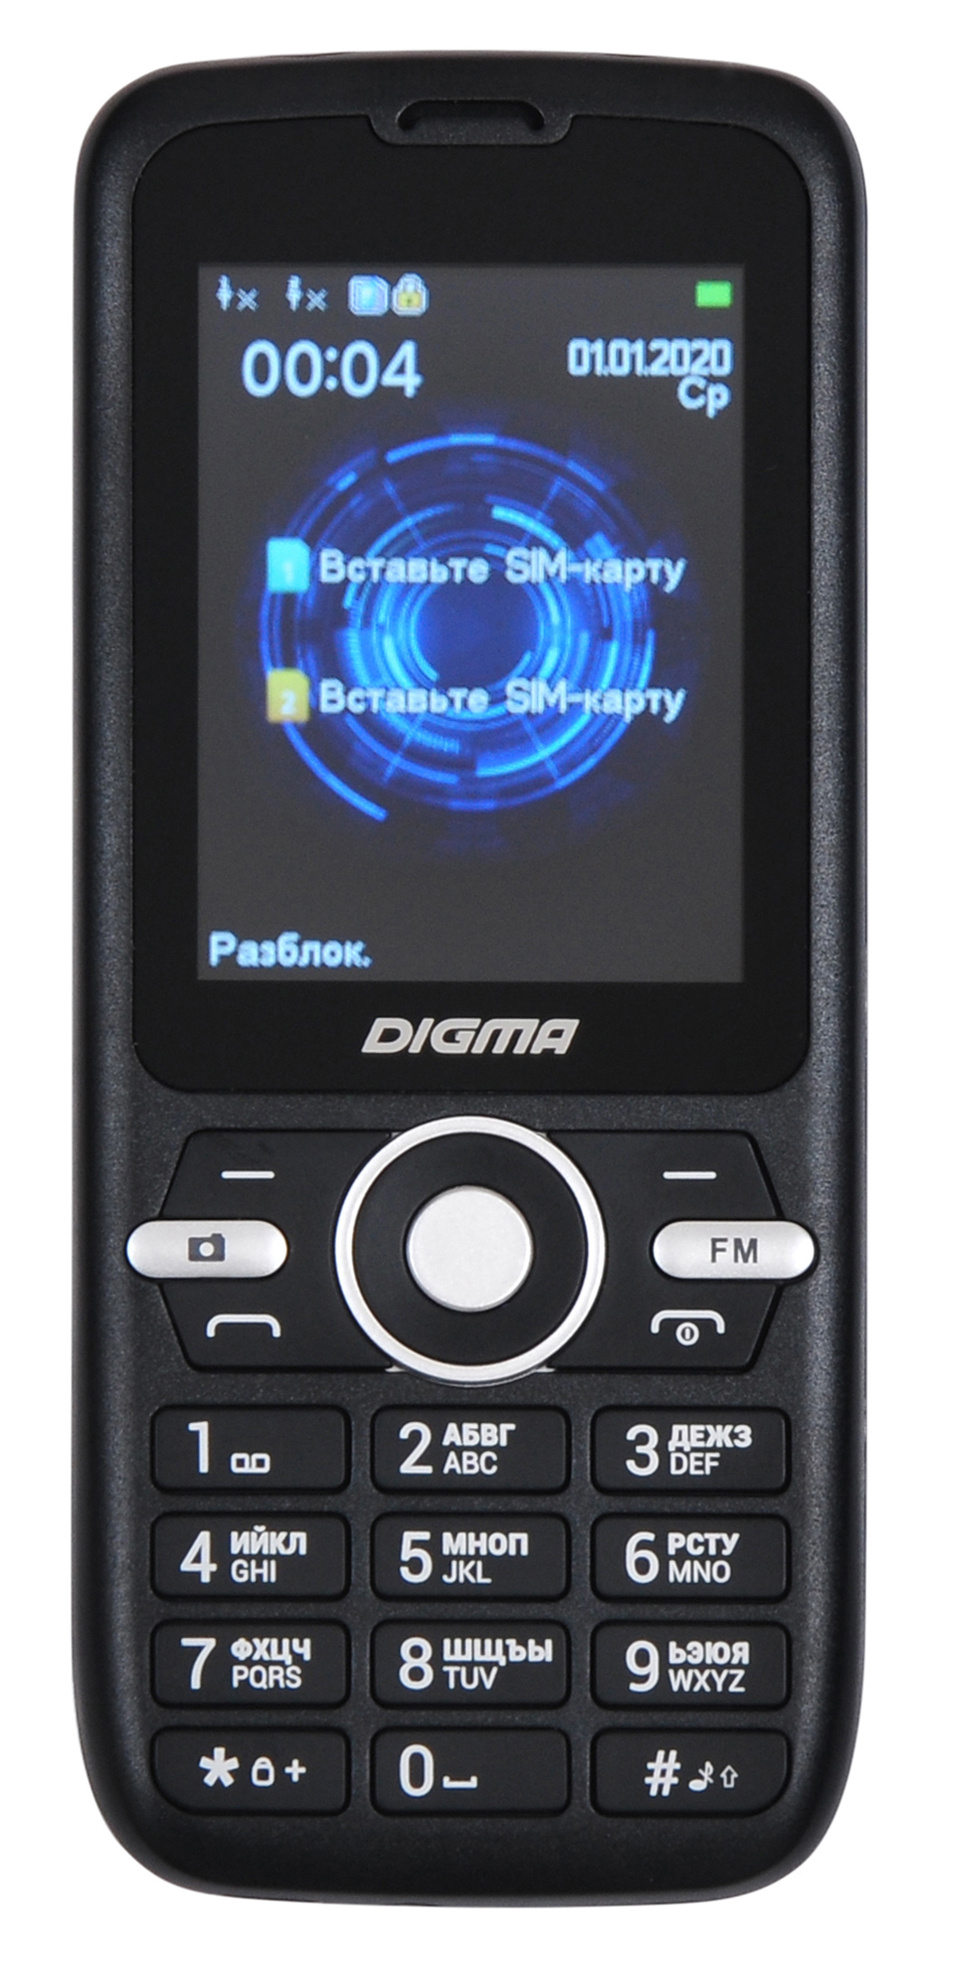 Мобильный телефон Digma Linx B240 Black (LT2058PM), купить в Москве, цены в интернет-магазинах на Мегамаркет